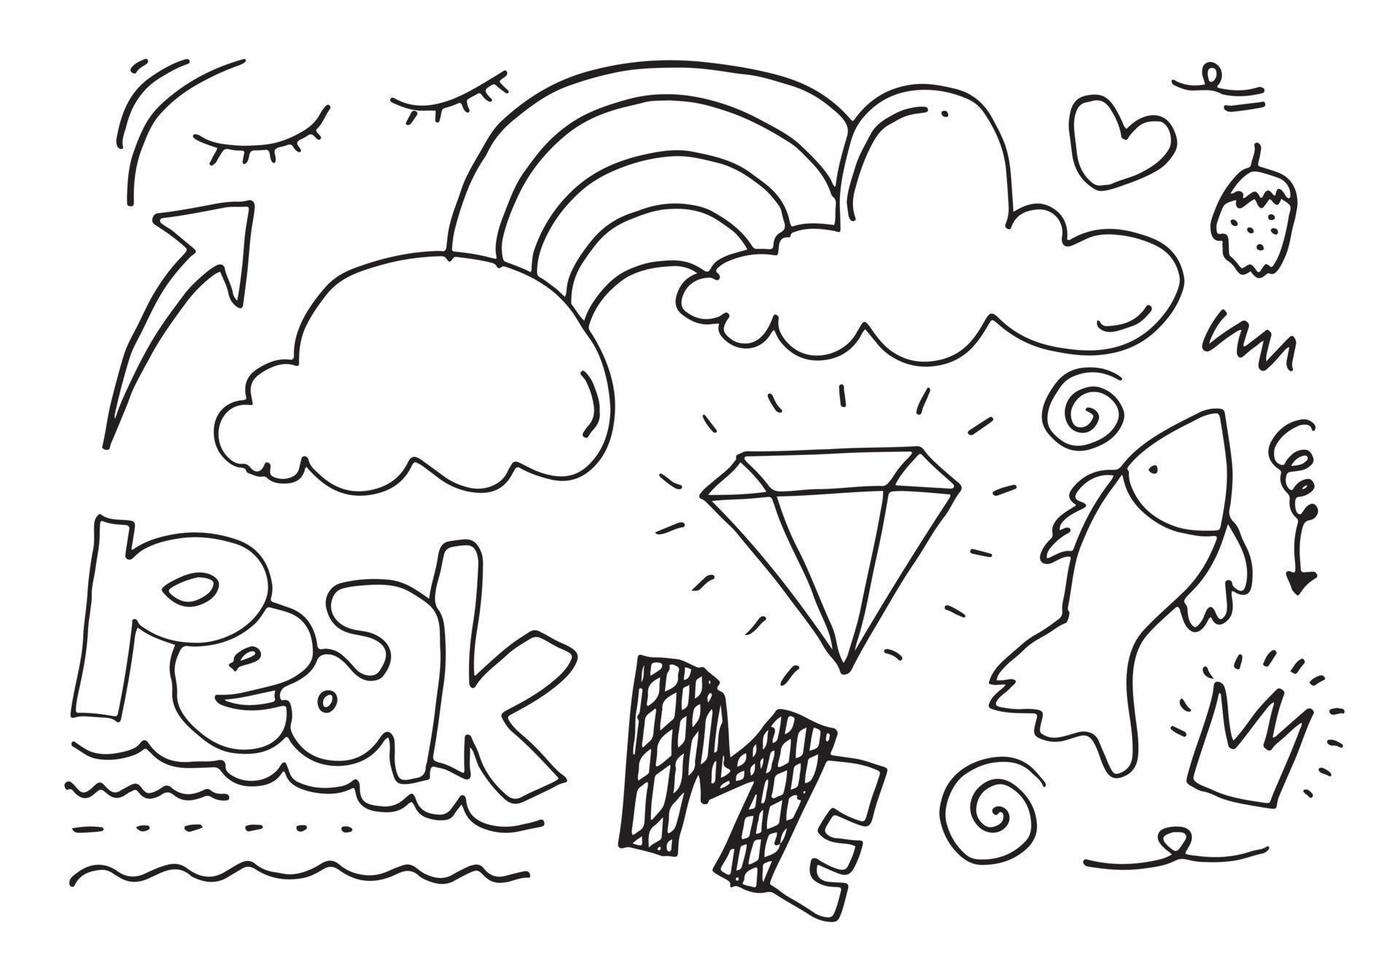 hand dragen uppsättning element, svart på vit bakgrund. regnbåge, pil, kung, betoning, moln, diamant, virvla runt, fisk, jordgubbe, och topp mig text för begrepp design. vektor